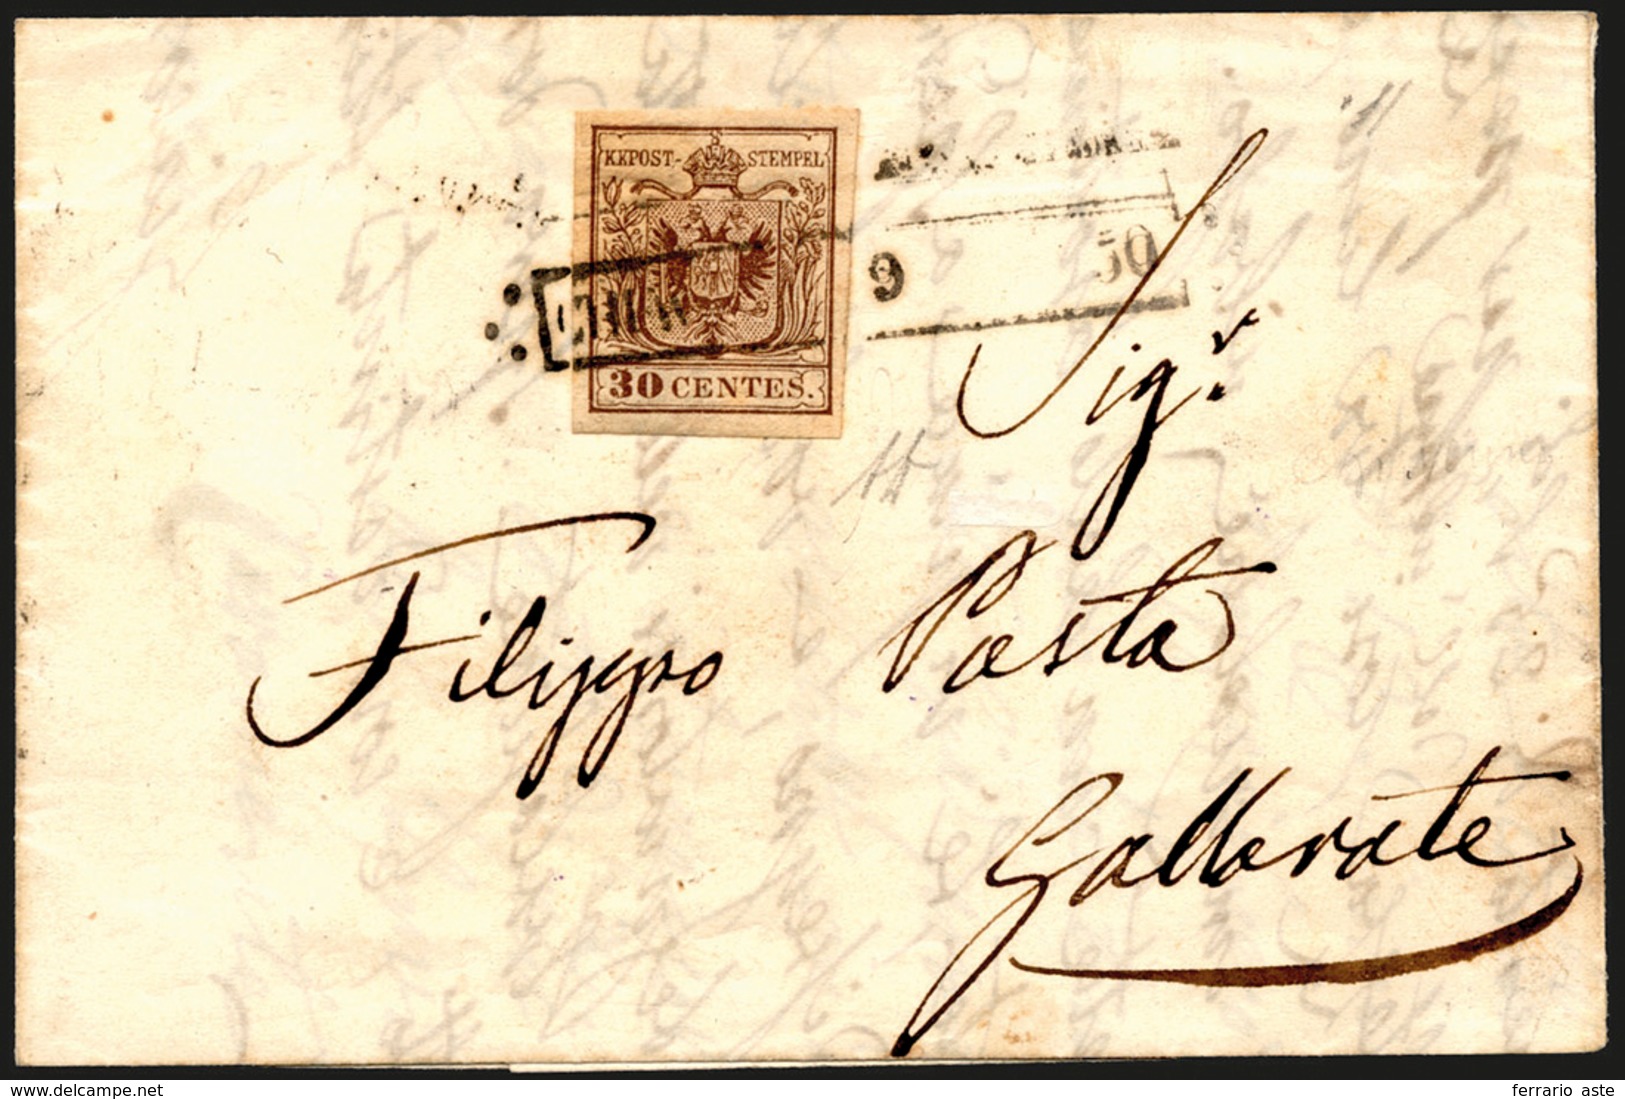 275 CHIAVENNA, R50 Punti 12 - 30 Cent. (7), Perfetto, Su Lettera Del 9/8/1850 Per Gallarate. Bella E Rar... - Lombardo-Venetien